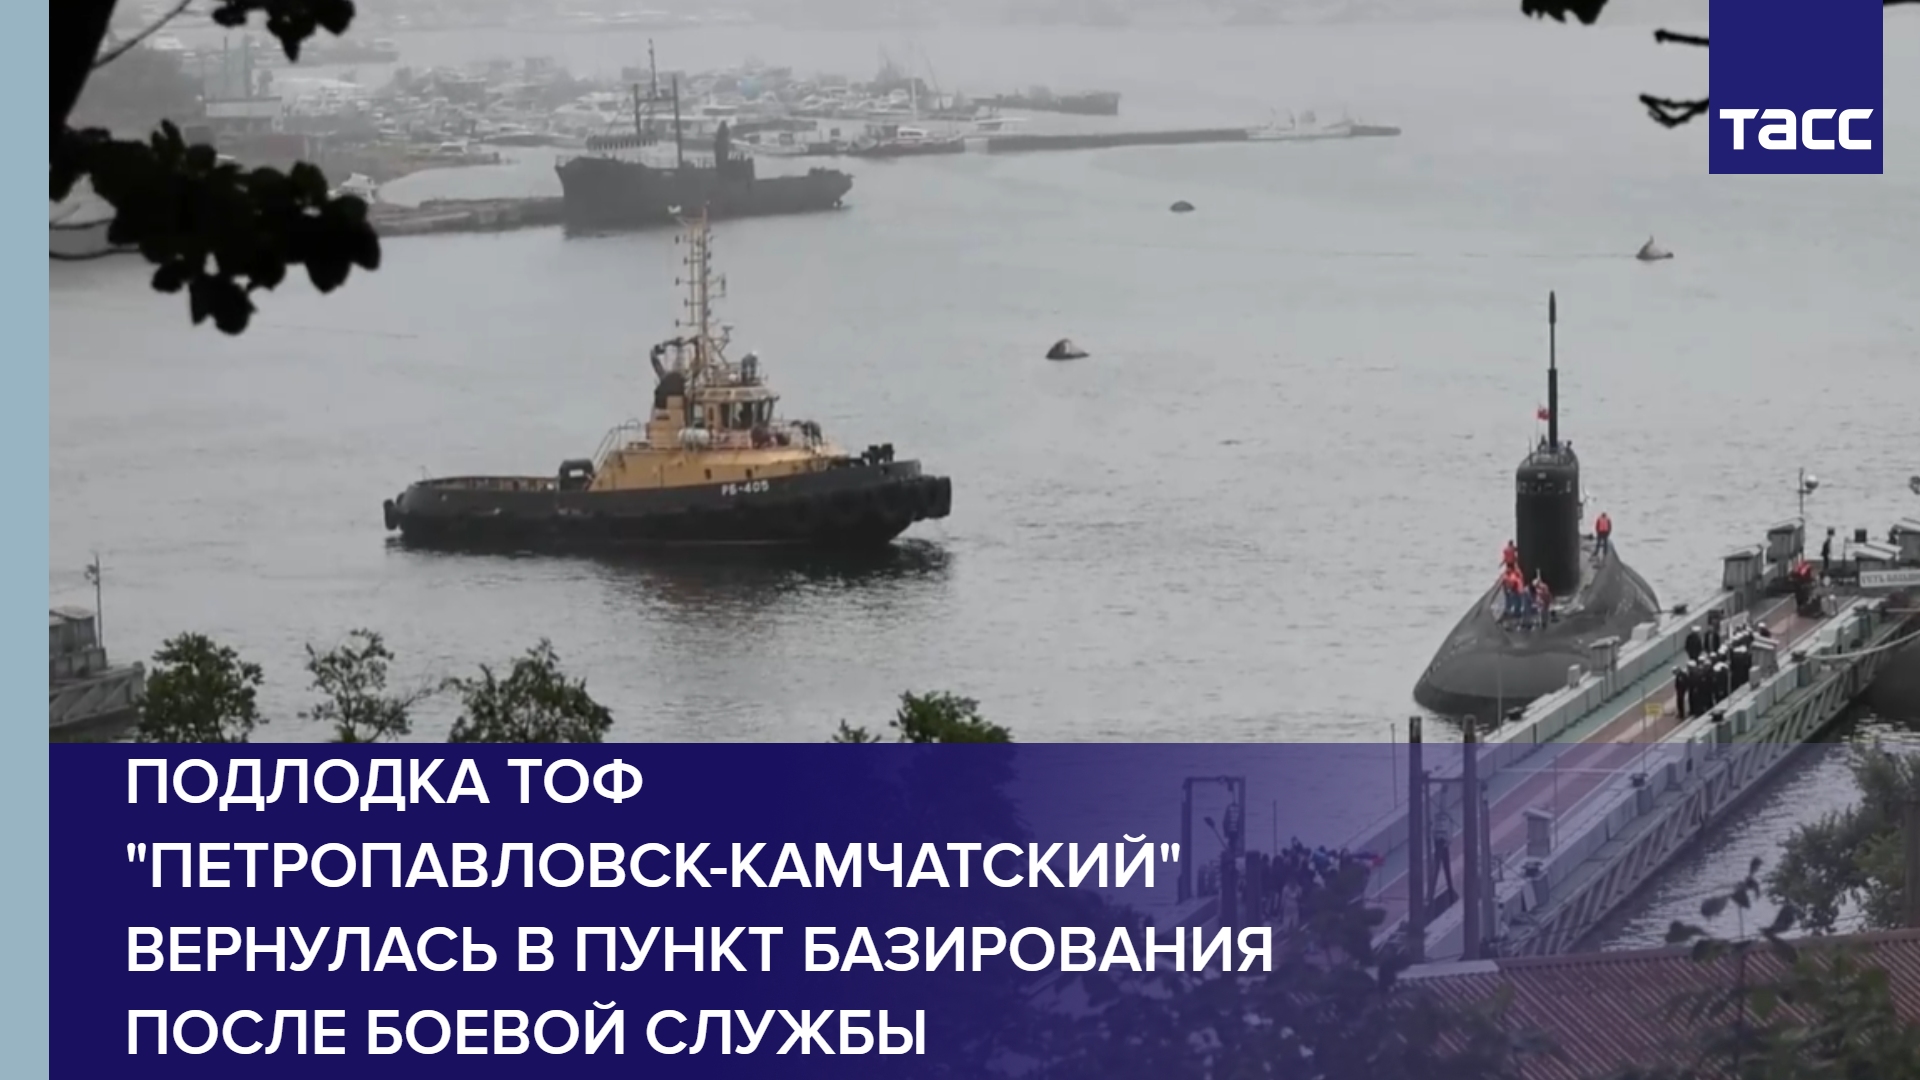 Подлодка ТОФ "Петропавловск-Камчатский" вернулась в пункт базирования после боевой службы